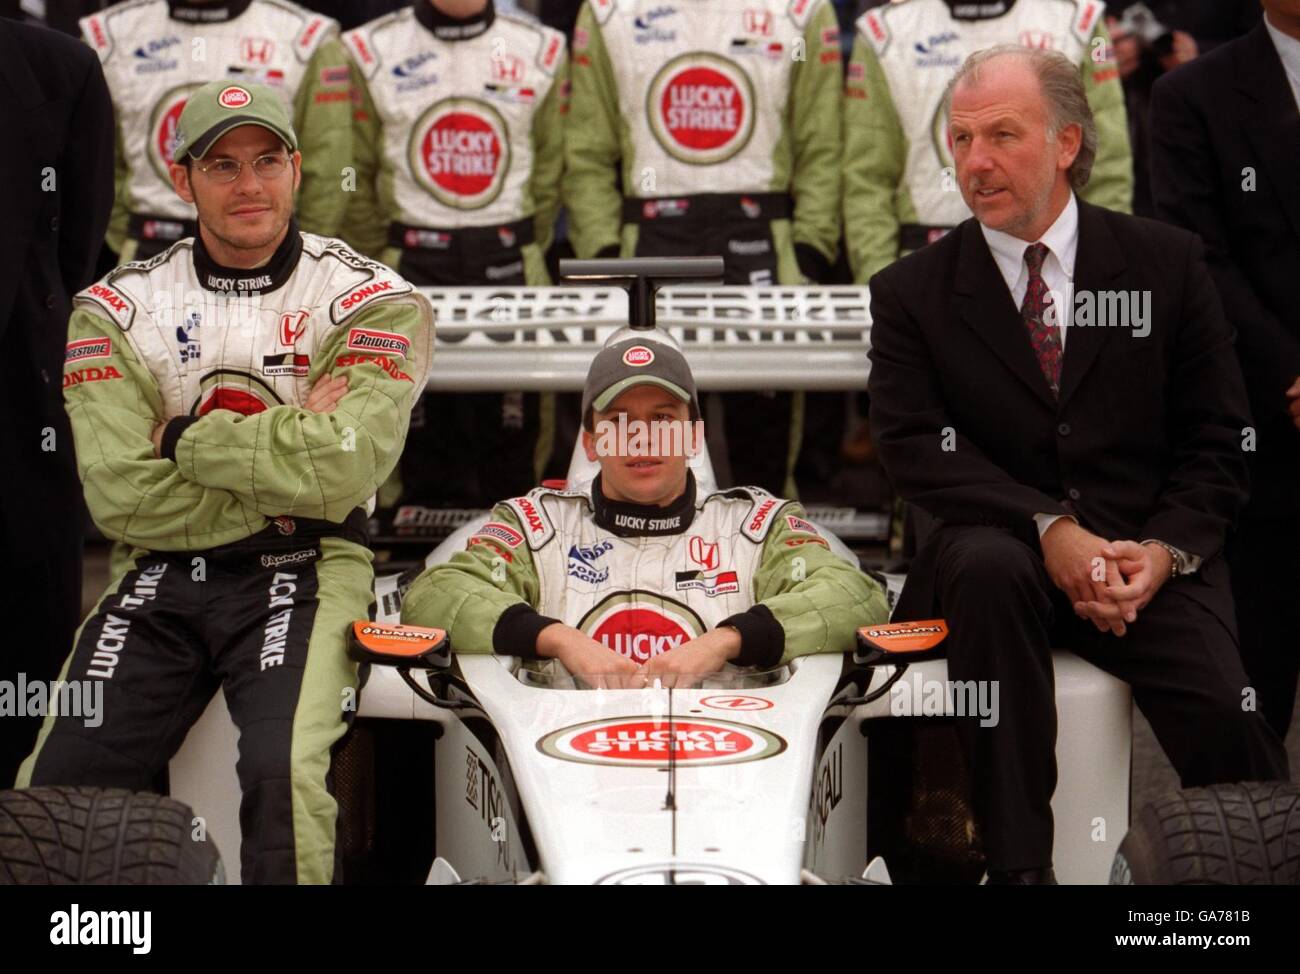 Motor Sport - Formule 1 - lancement de B.A.R.Les pilotes B.A.R. Jacques Villeneuve, à gauche, et Olivier Panis avec le nouveau chef d'équipe David Richards au lancement de la nouvelle voiture Banque D'Images